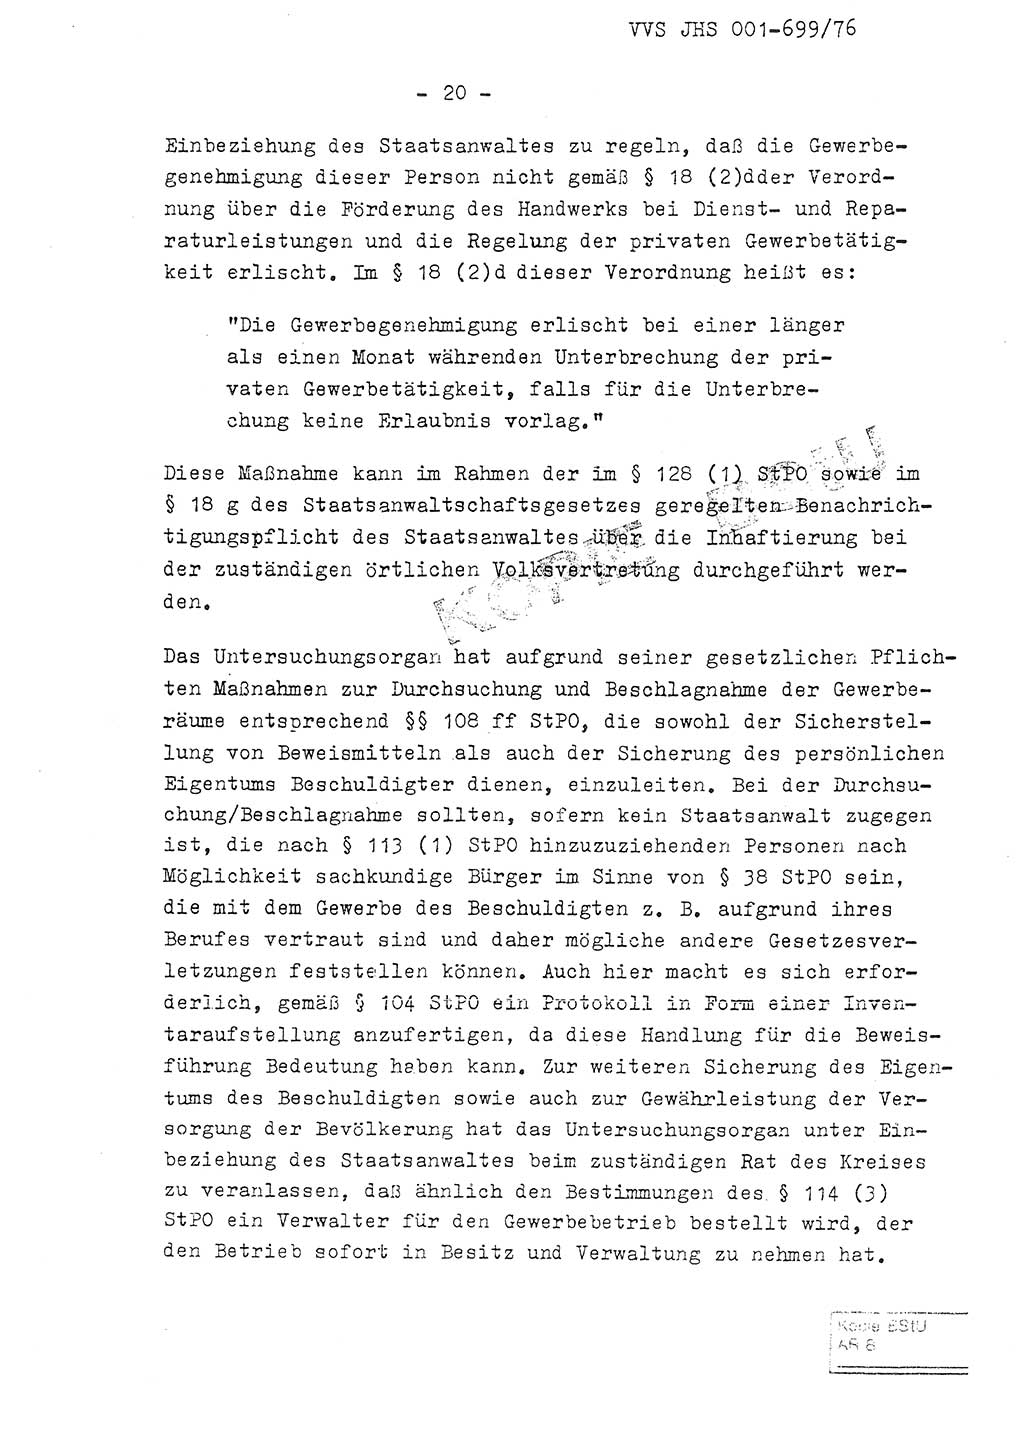 Fachschulabschlußarbeit Leutnant Volkmar Taubert (HA Ⅸ/9), Leutnant Axel Naumann (HA Ⅸ/9), Unterleutnat Detlef Debski (HA Ⅸ/9), Ministerium für Staatssicherheit (MfS) [Deutsche Demokratische Republik (DDR)], Juristische Hochschule (JHS), Vertrauliche Verschlußsache (VVS) 001-699/76, Potsdam 1976, Seite 20 (FS-Abschl.-Arb. MfS DDR JHS VVS 001-699/76 1976, S. 20)